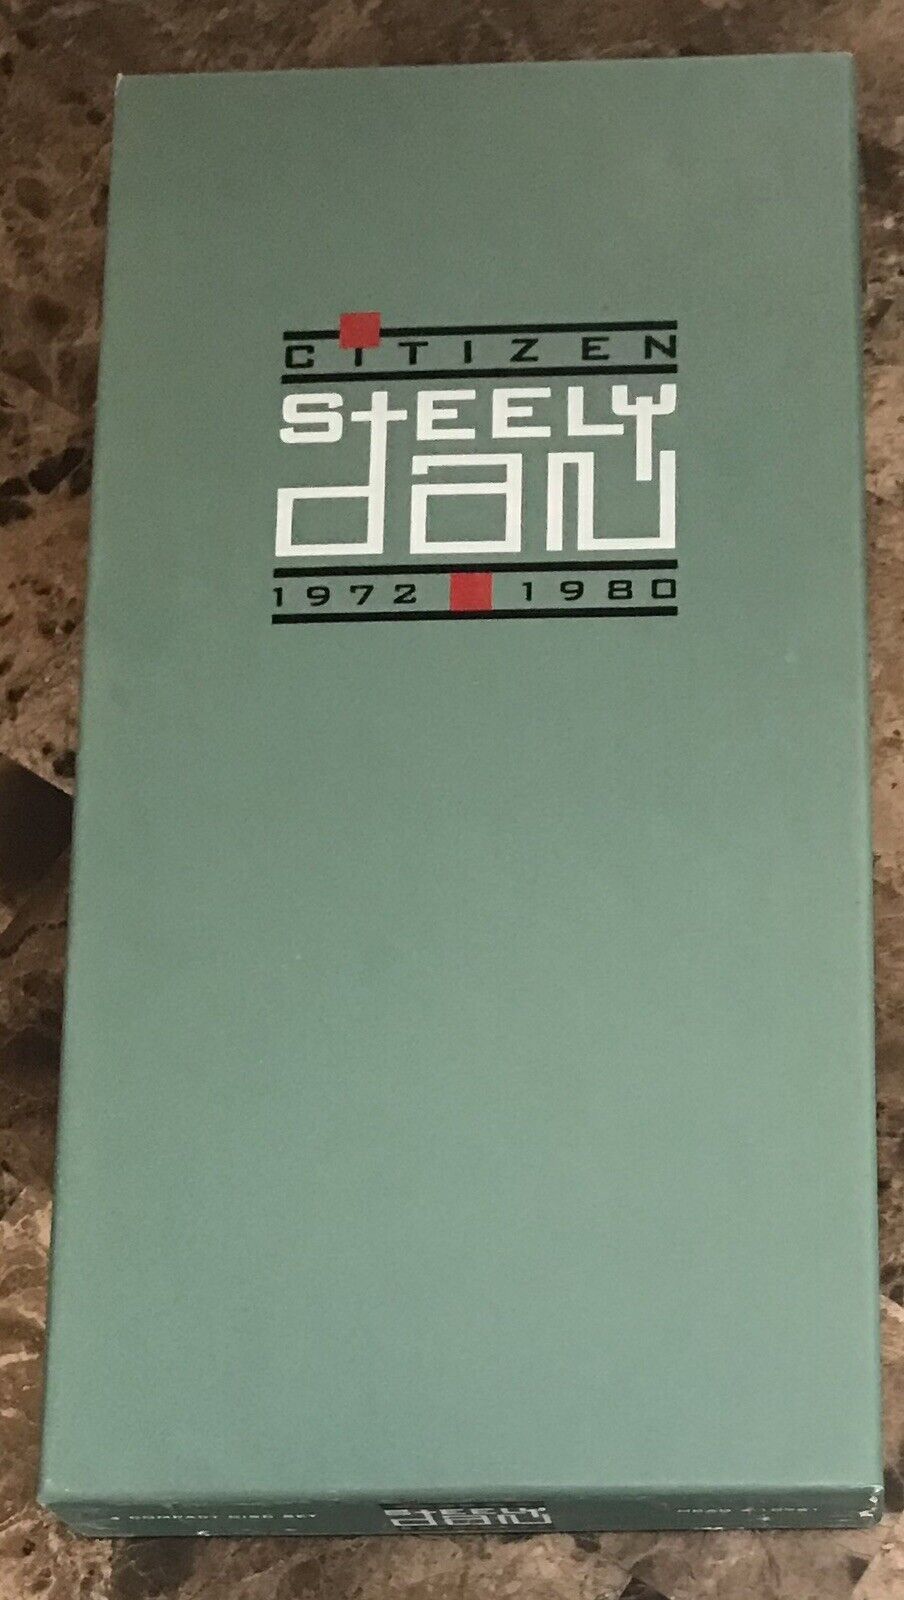 Steely Dan - Citizen 1972-1980 NEAR MINT Box Set 4 CDs + Photo Book